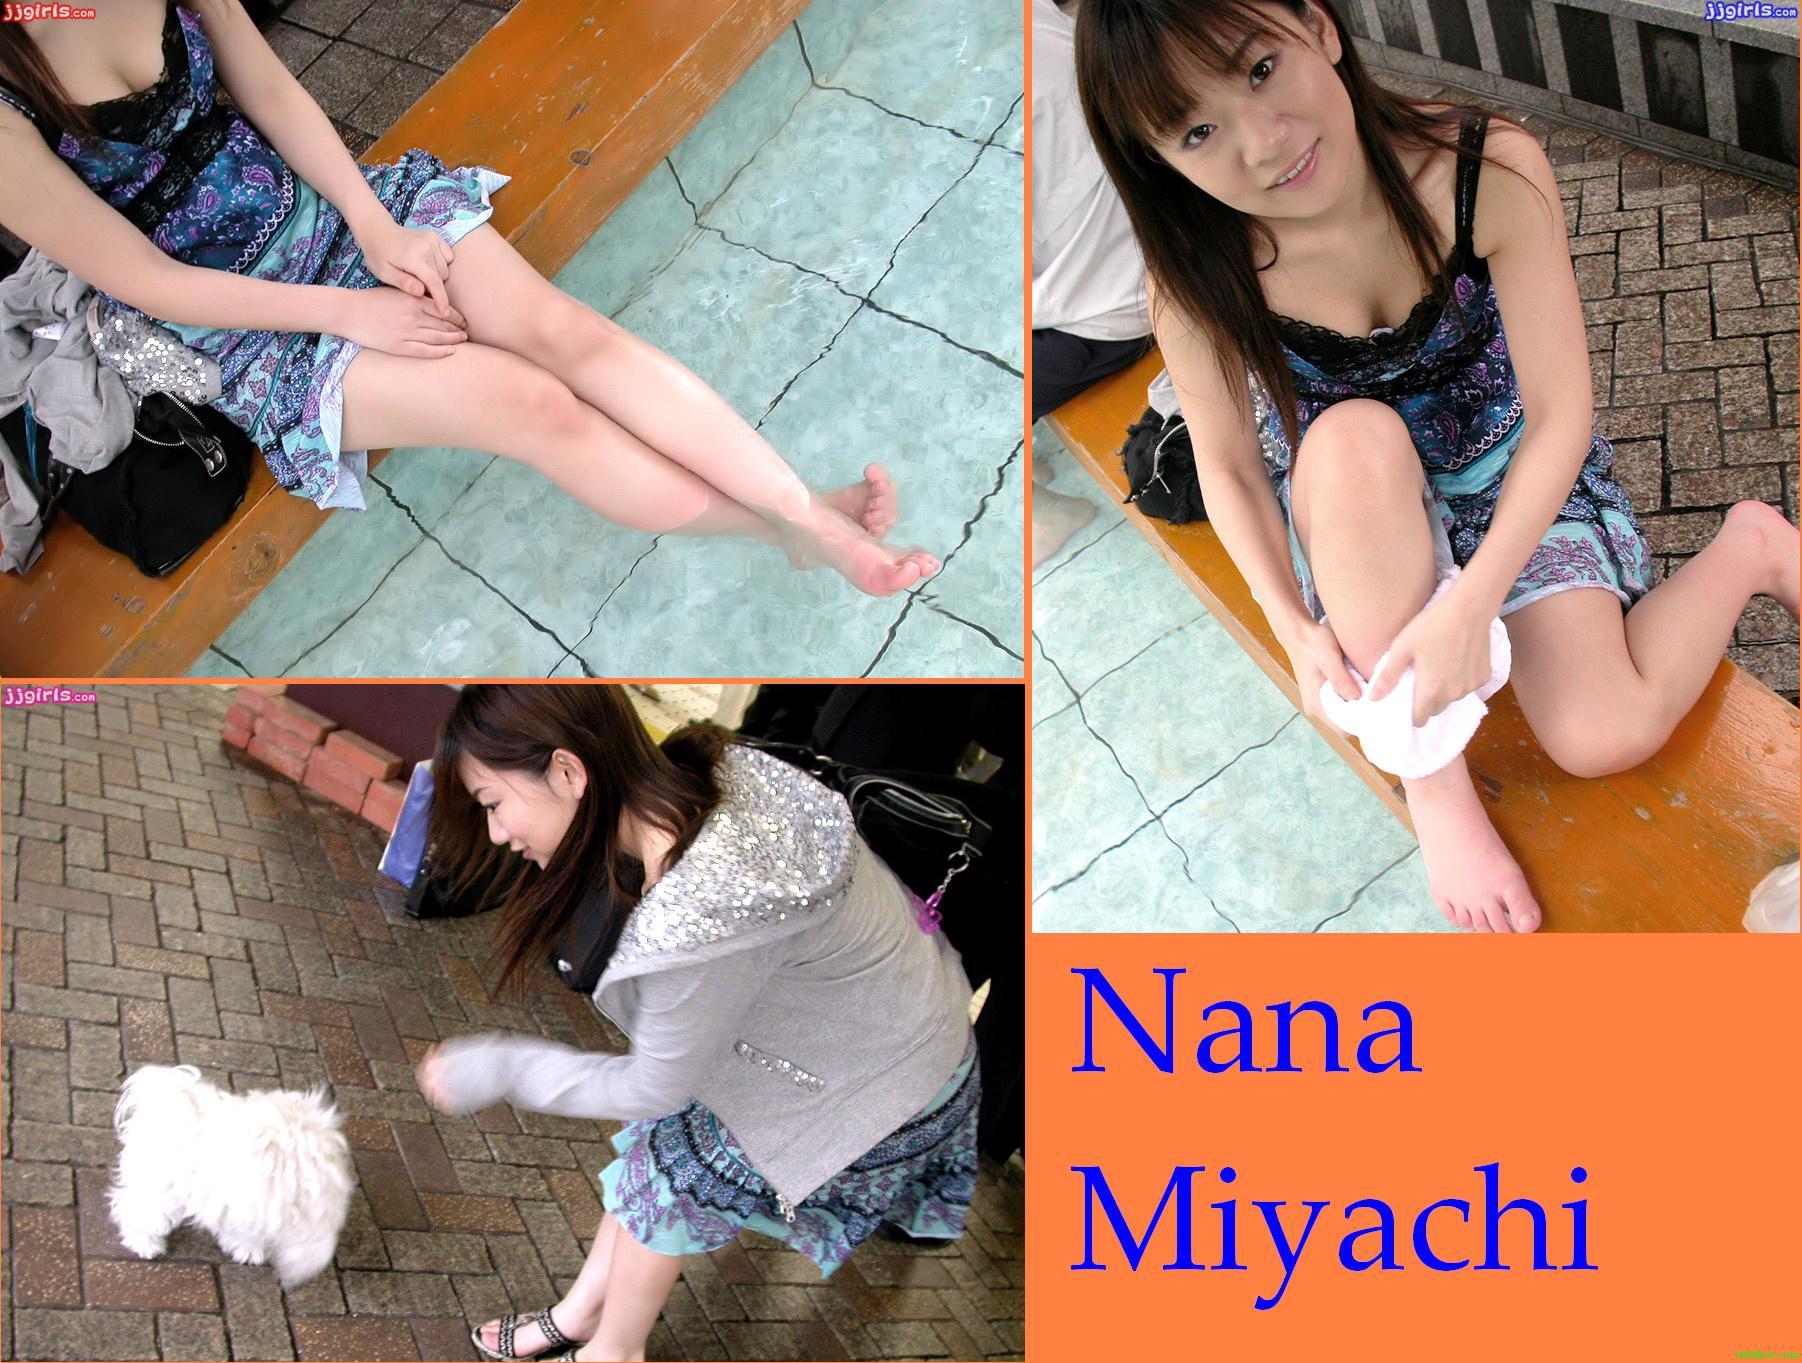 Nana miyachi